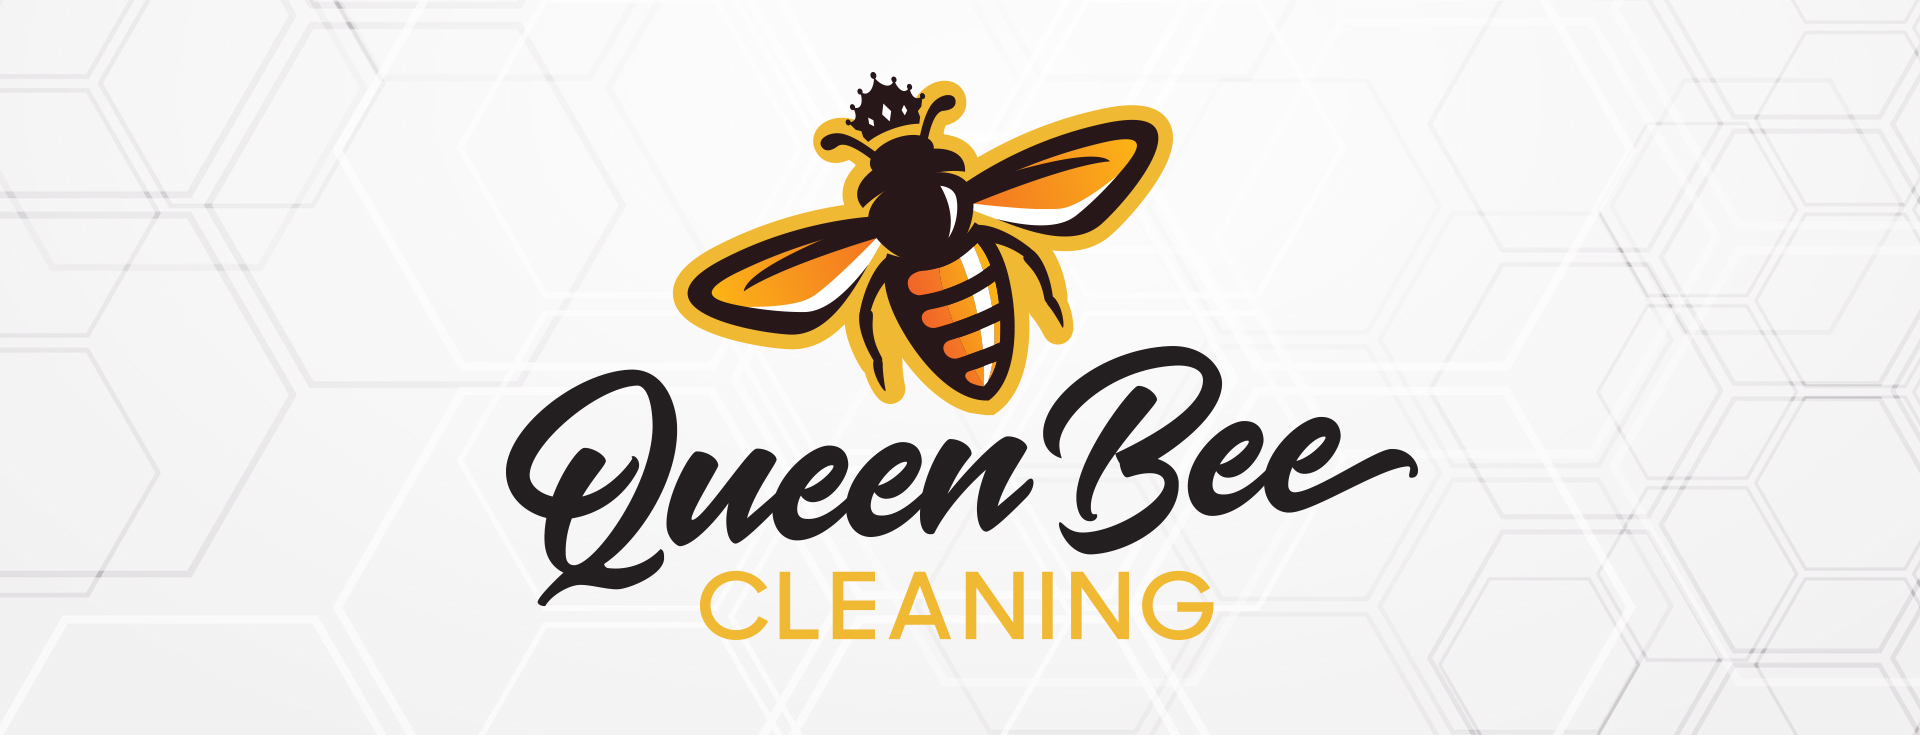 QueenBee_Logo_FacebookBanner